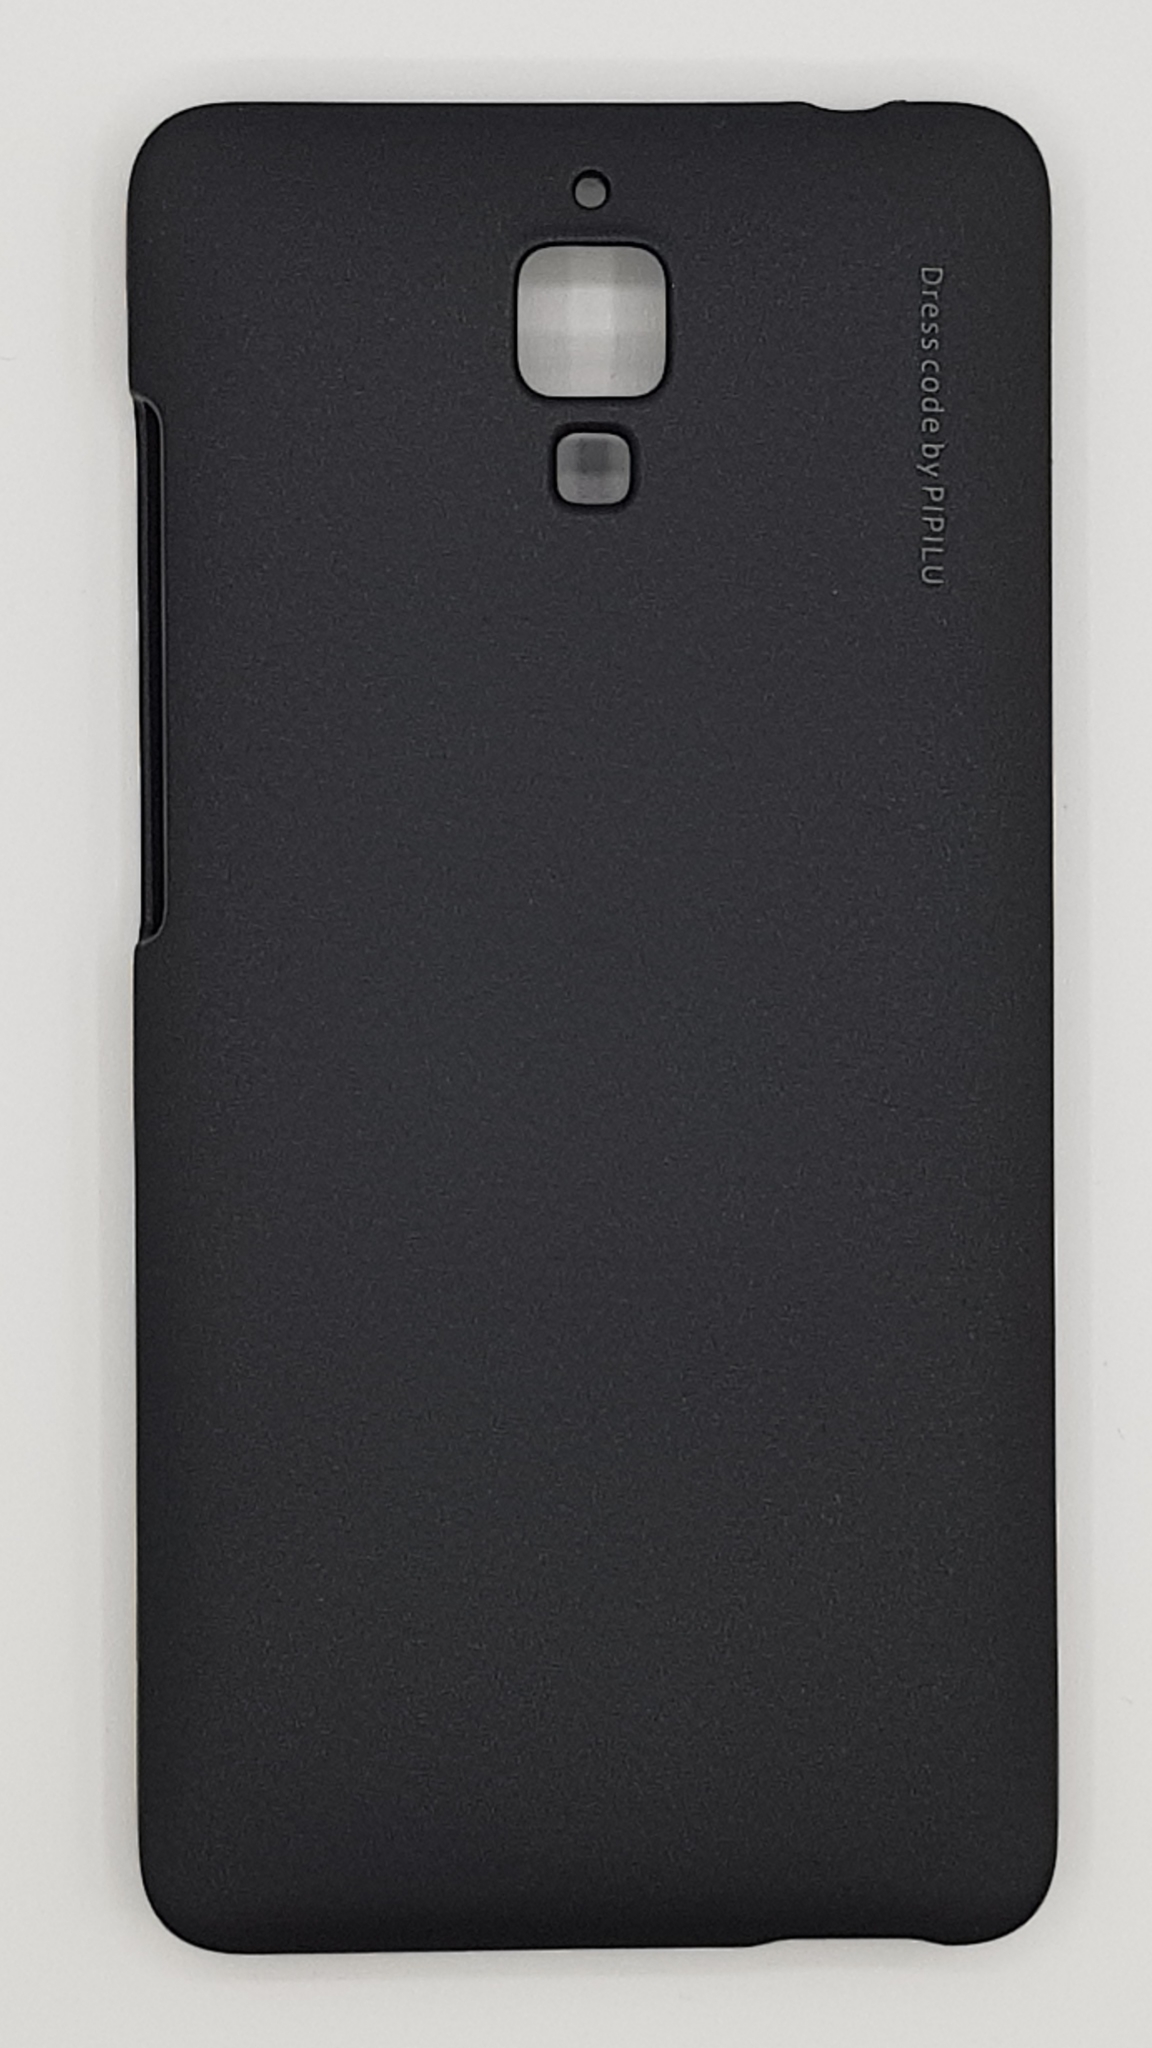 Чехол накладка для XIAOMI MI 4, пластик, цвет чёрный.